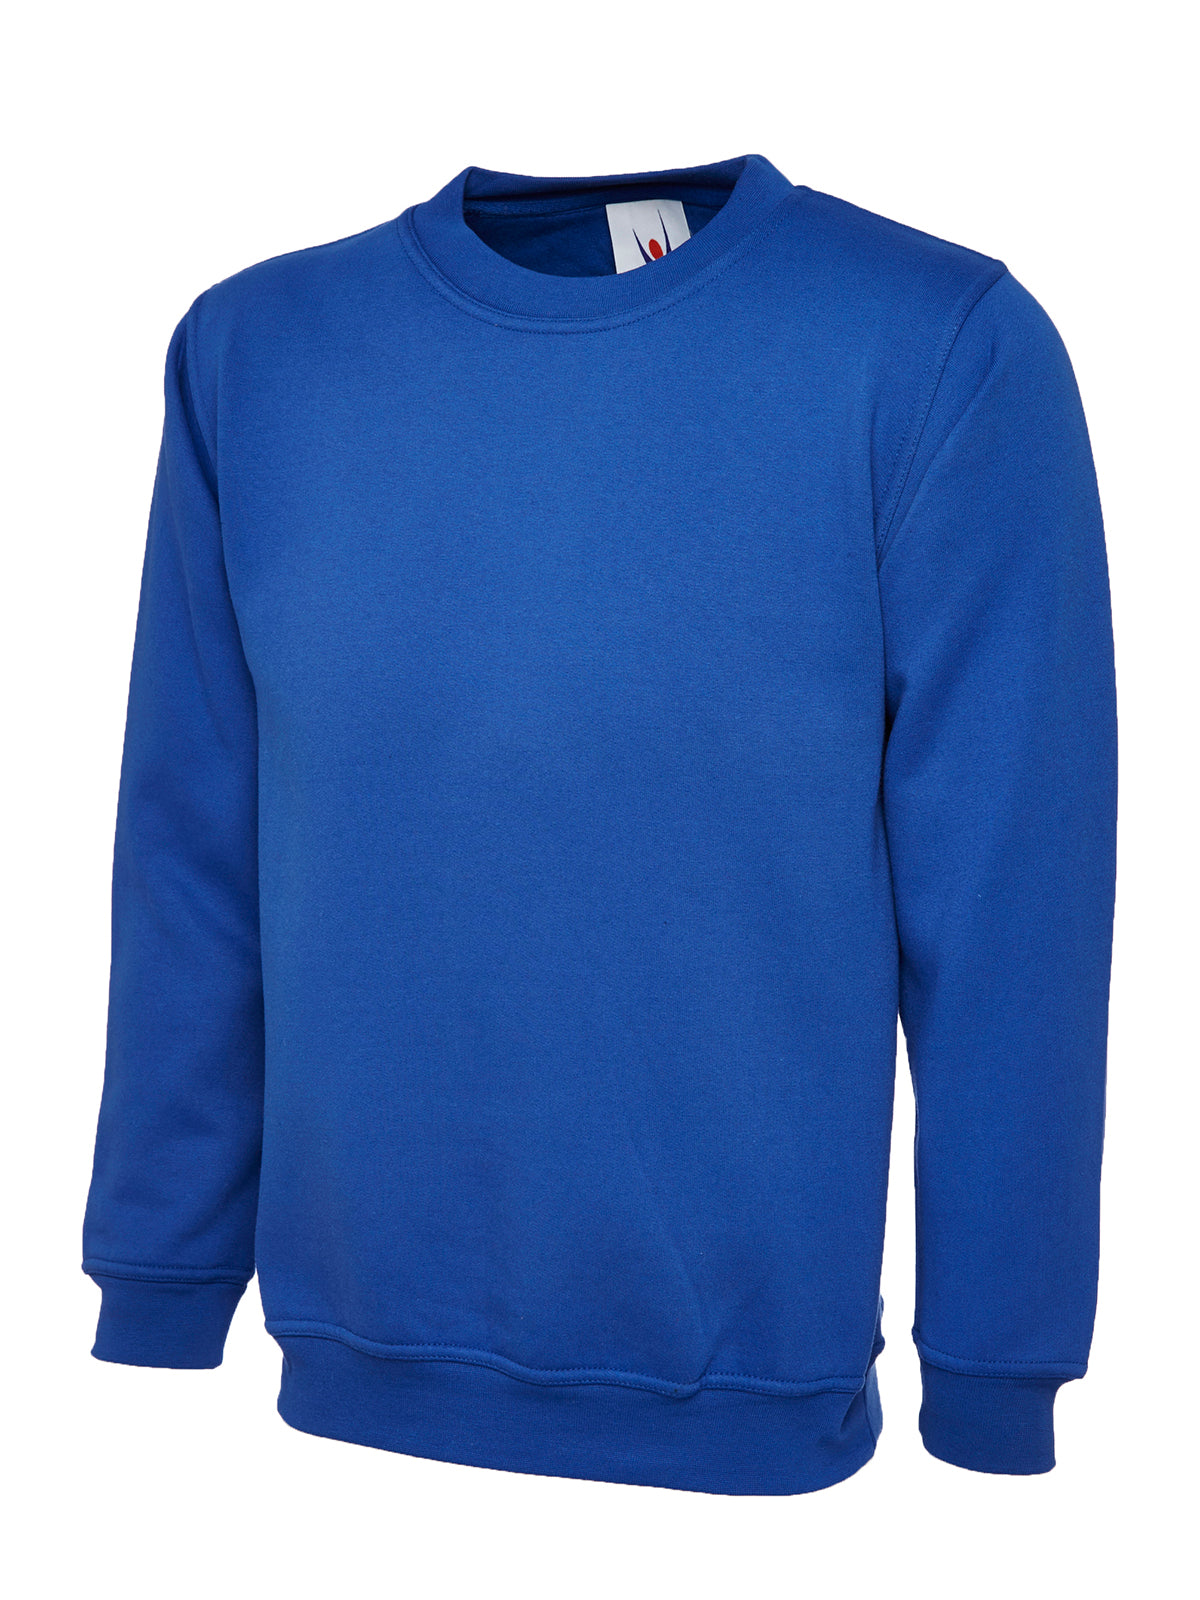 Uneek Premium Unisex Sweatshirt UC201 - Royal